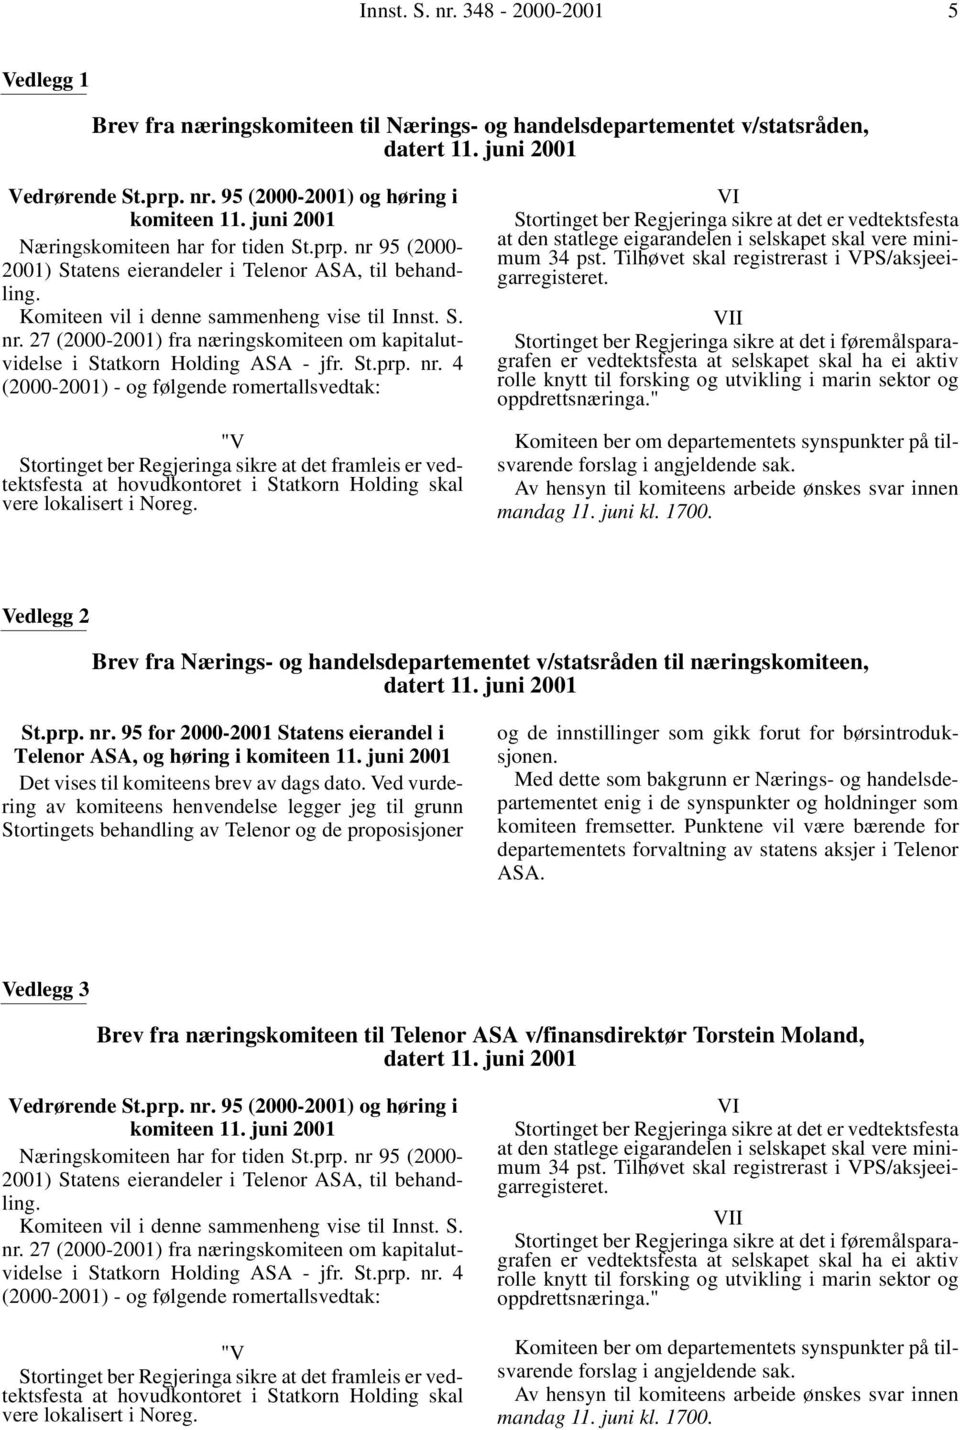 St.prp. nr. 4 (2000-2001) - og følgende romertallsvedtak: "V Stortinget ber Regjeringa sikre at det framleis er vedtektsfesta at hovudkontoret i Statkorn Holding skal vere lokalisert i Noreg.